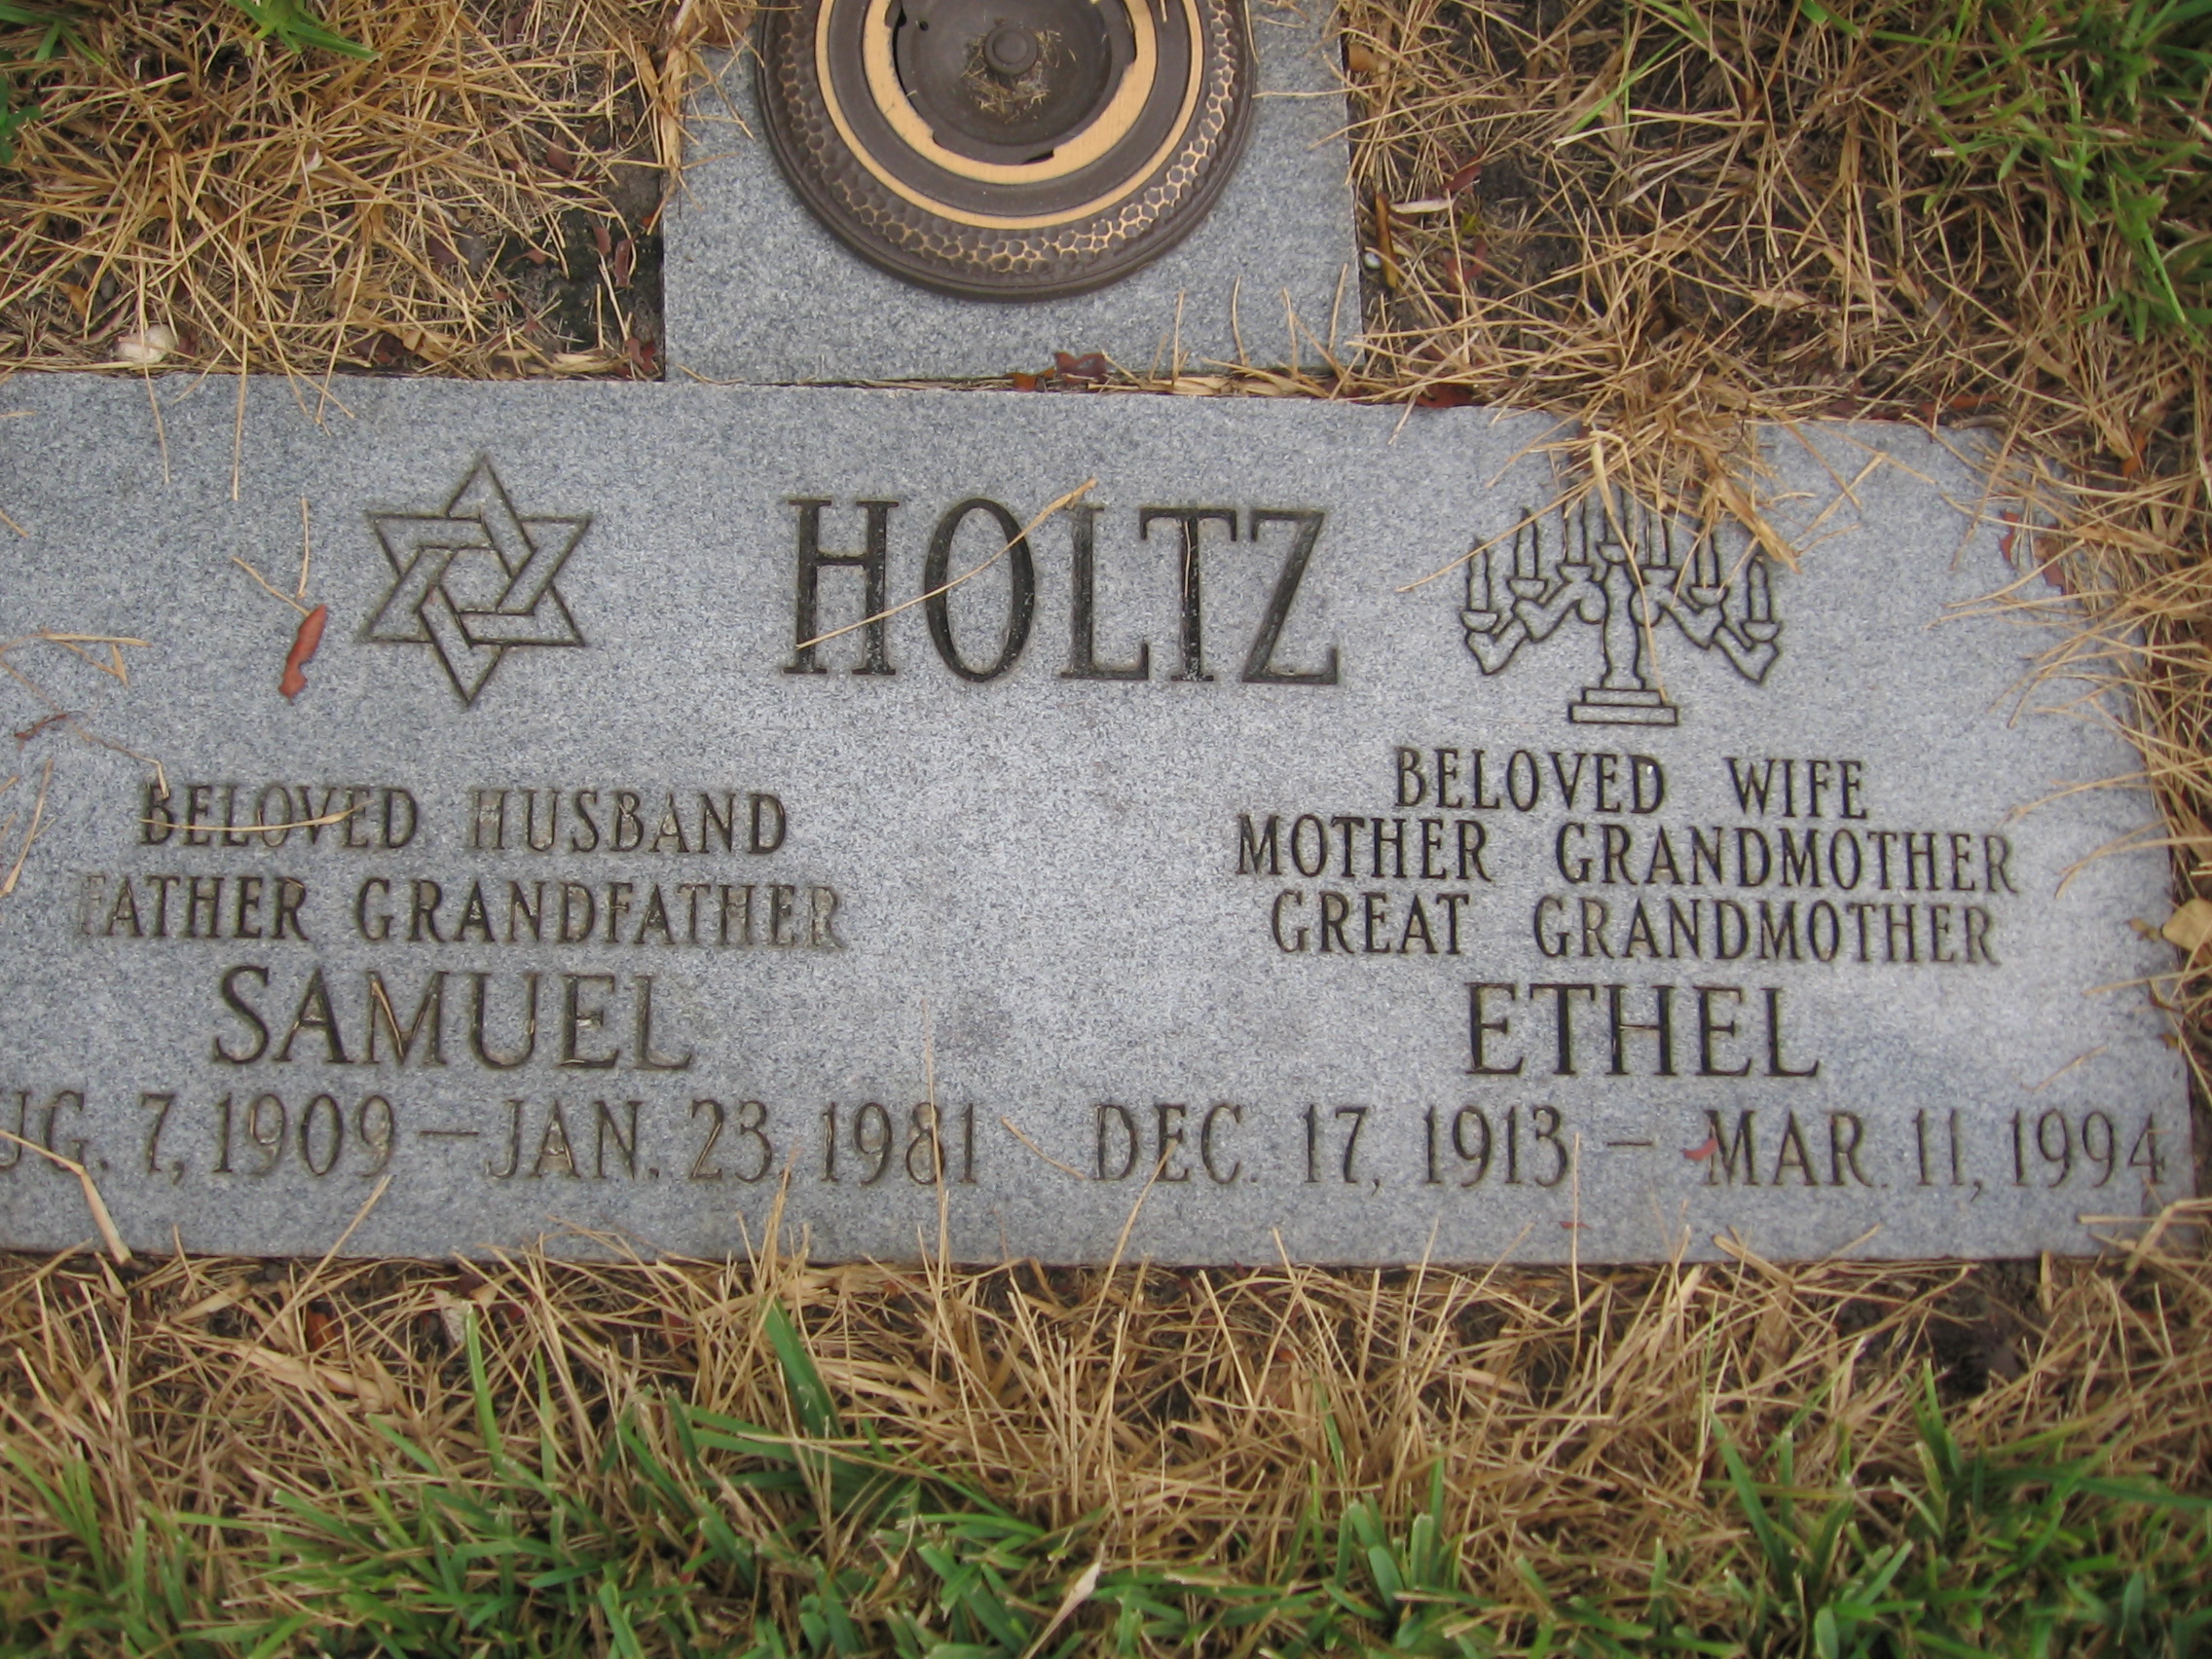 Ethel Holtz